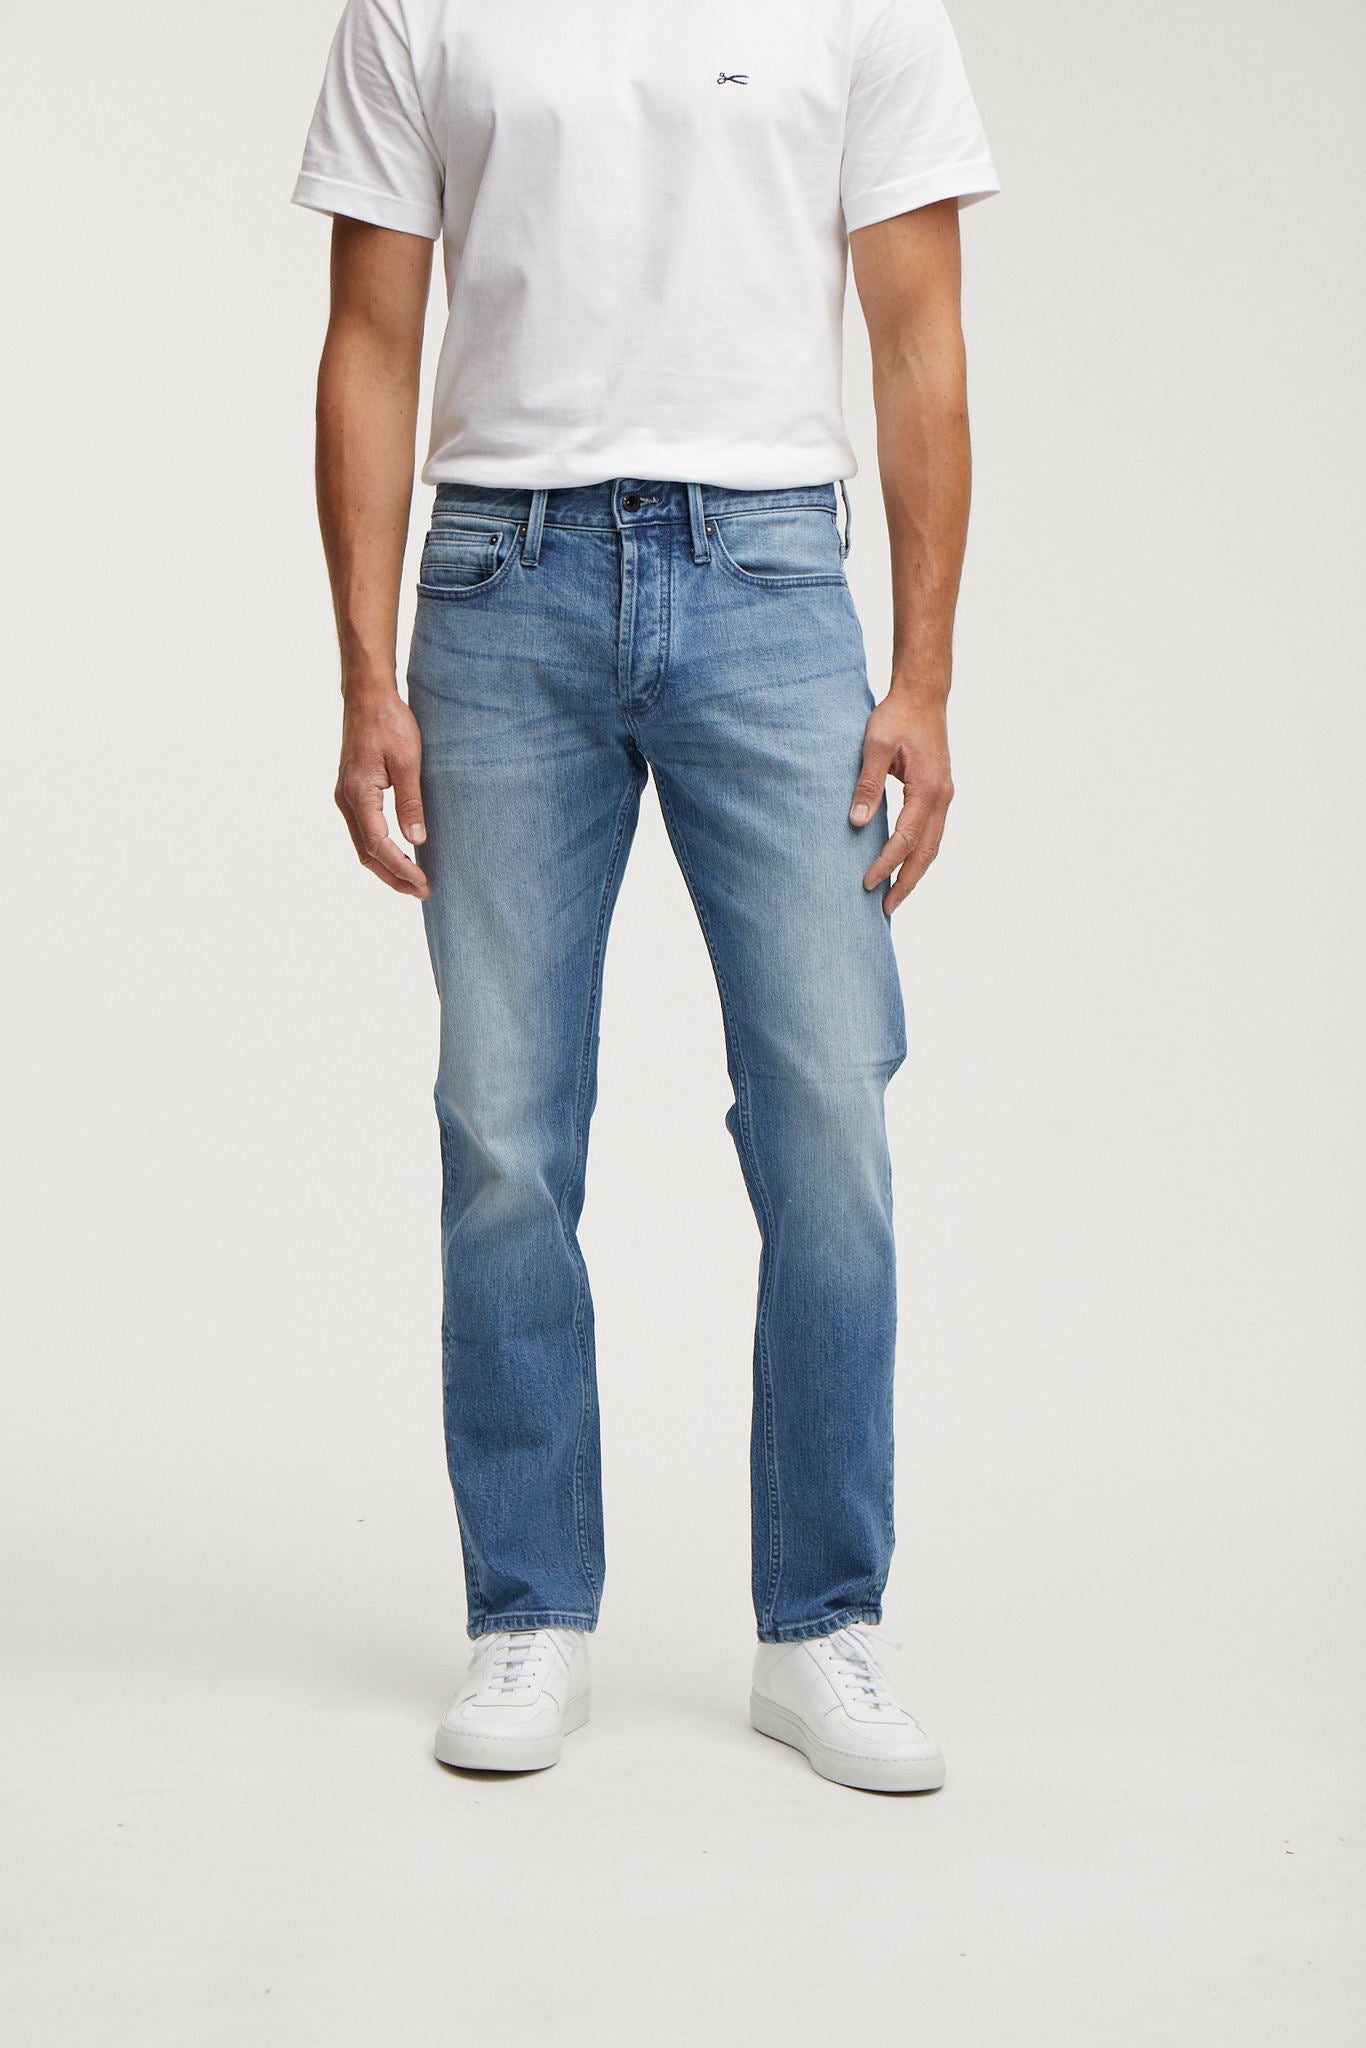 DENHAM】Ridge ACEMB Slim Straight Jeans – Blue Beach Denim